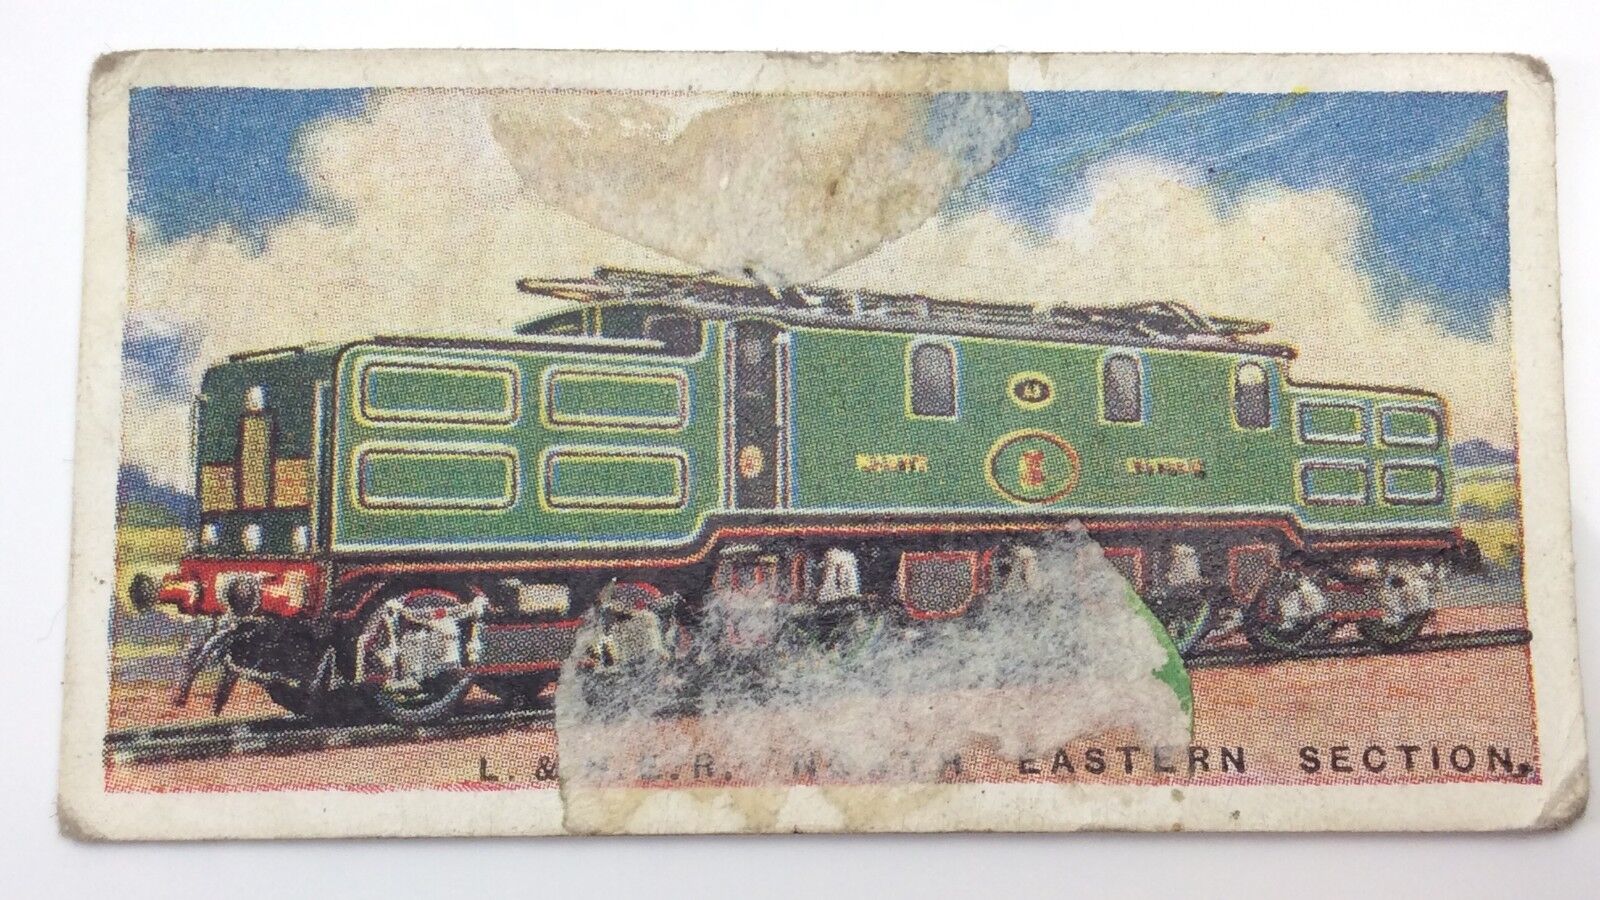 L&NE Railway Engines 13-464 Imperial Tobacco Card 17 Trains F054